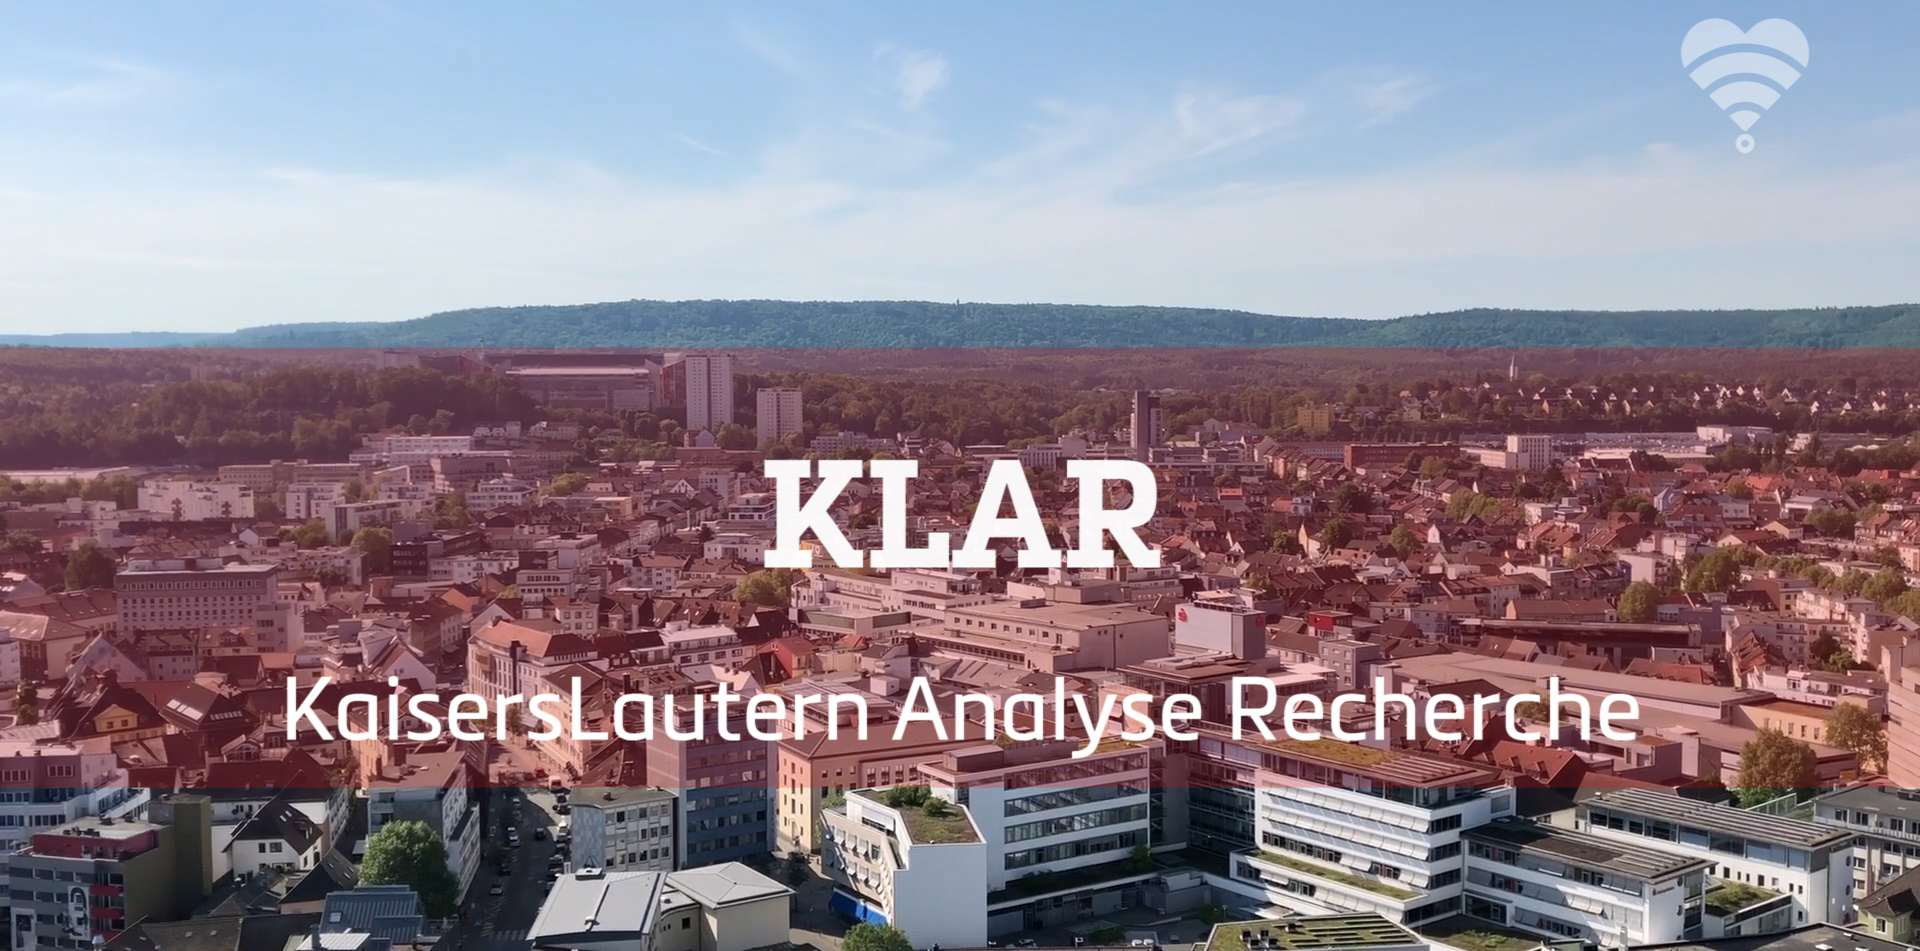 Stadtansicht von Kaiserslautern mit dem Text "Klar Kaiserslautern Analyse Recherche"